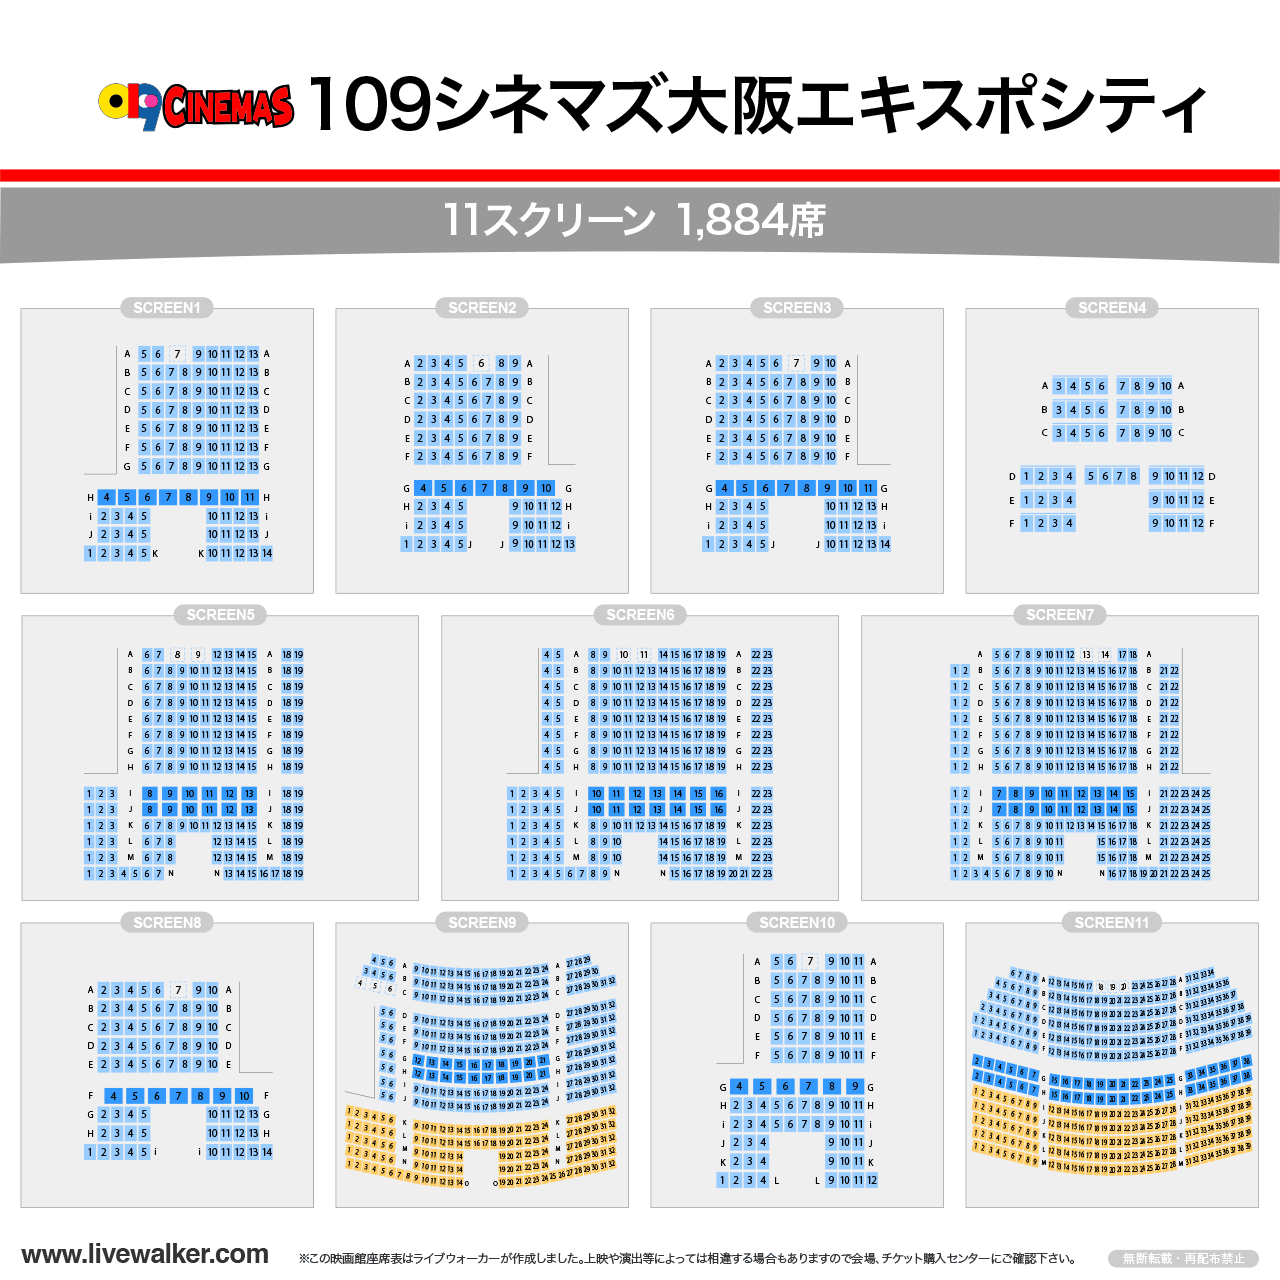 109シネマズ大阪エキスポシティシアターの座席表